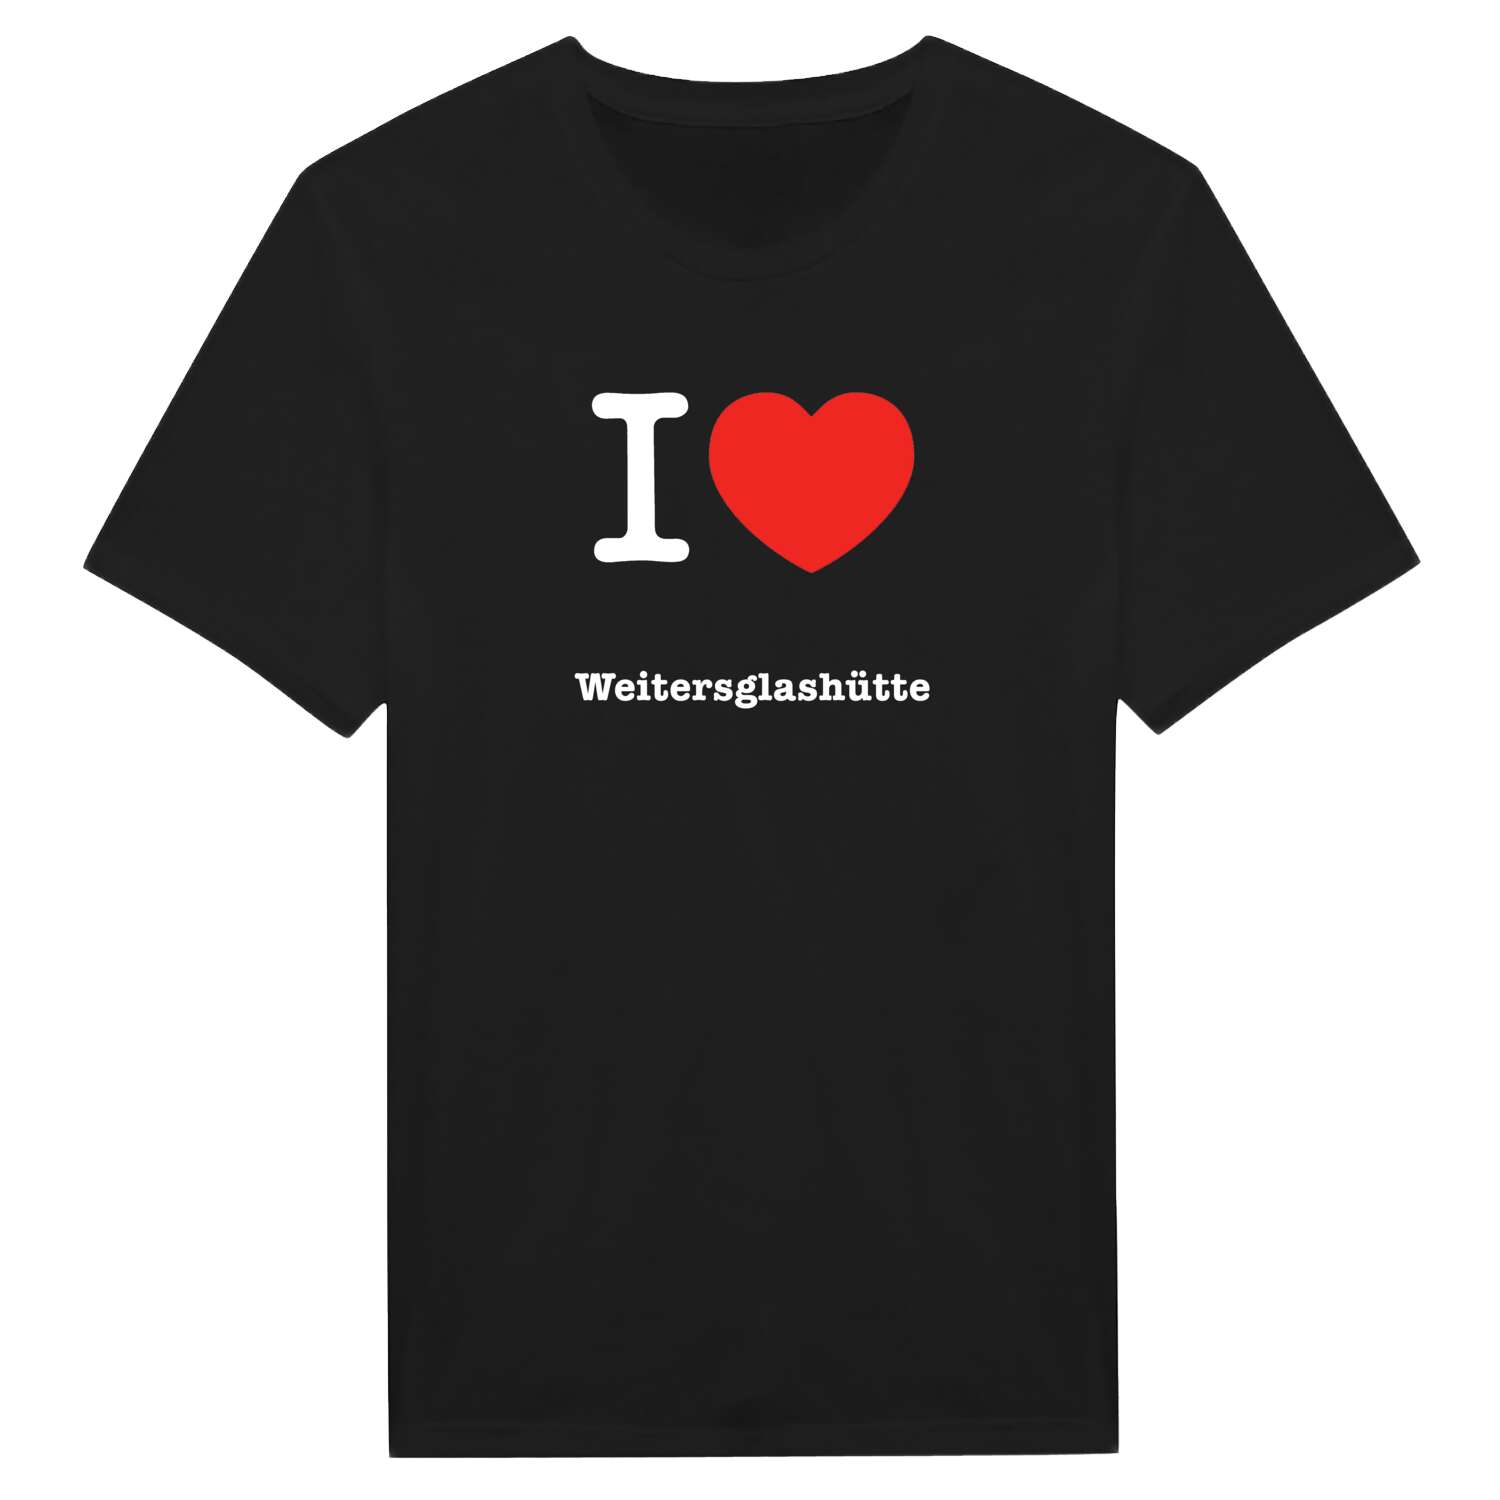 Weitersglashütte T-Shirt »I love«